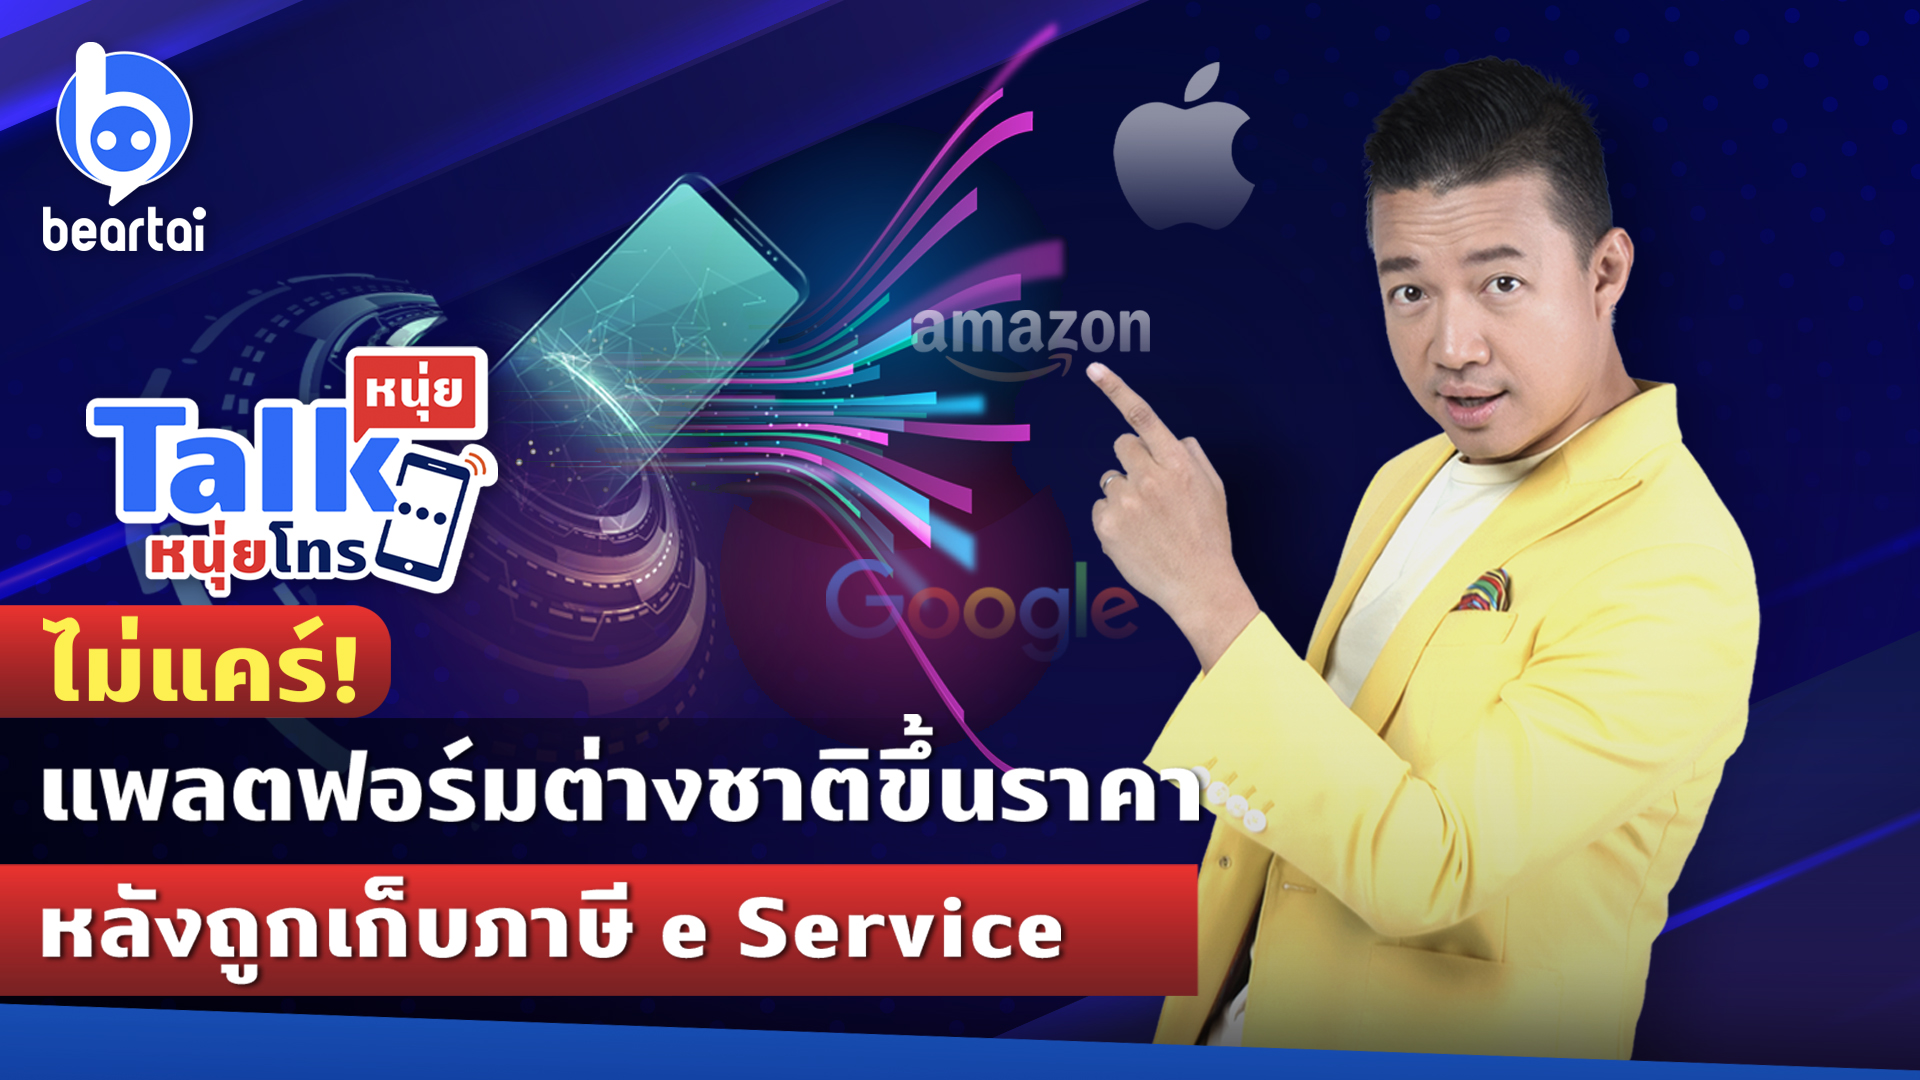 ประเทศไทยควรเดินหน้าเก็บภาษี e Service ต่อไปหรือไม่?